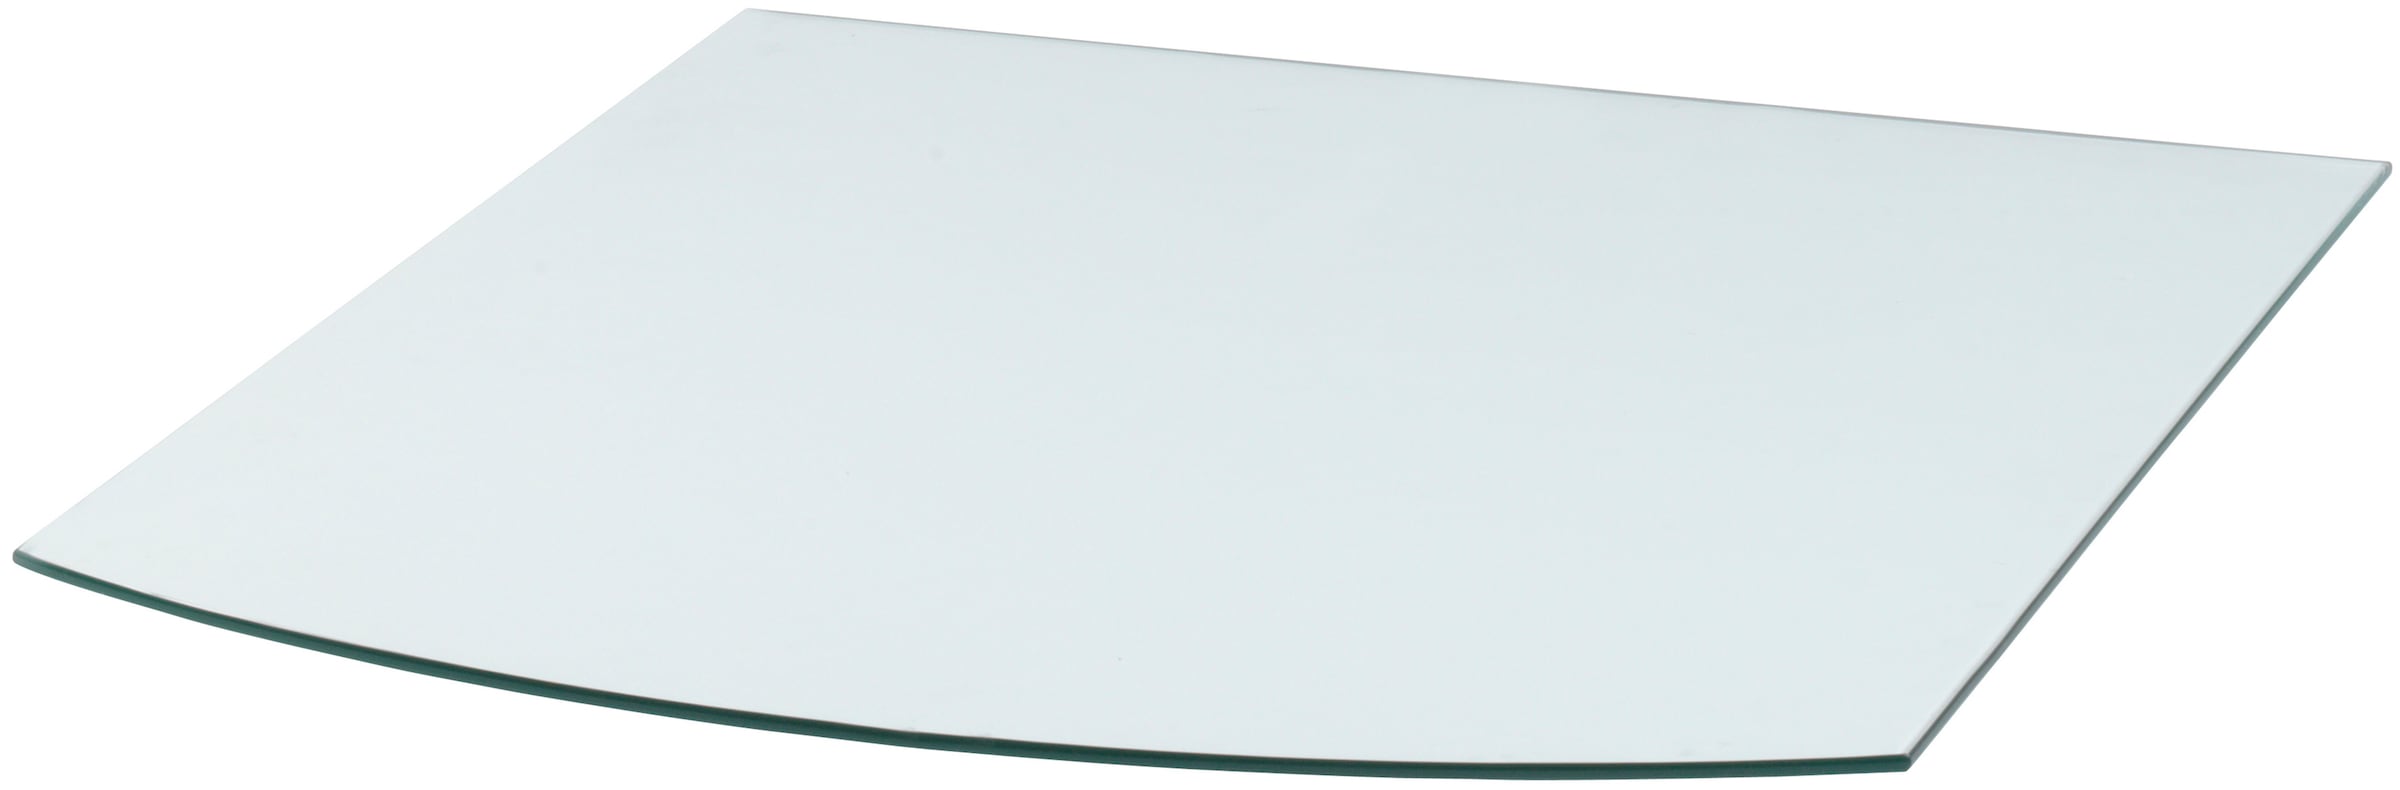 Heathus Bodenschutzplatte, Segmentbogen, 80 x 100 cm, transparent, zum Funkenschutz